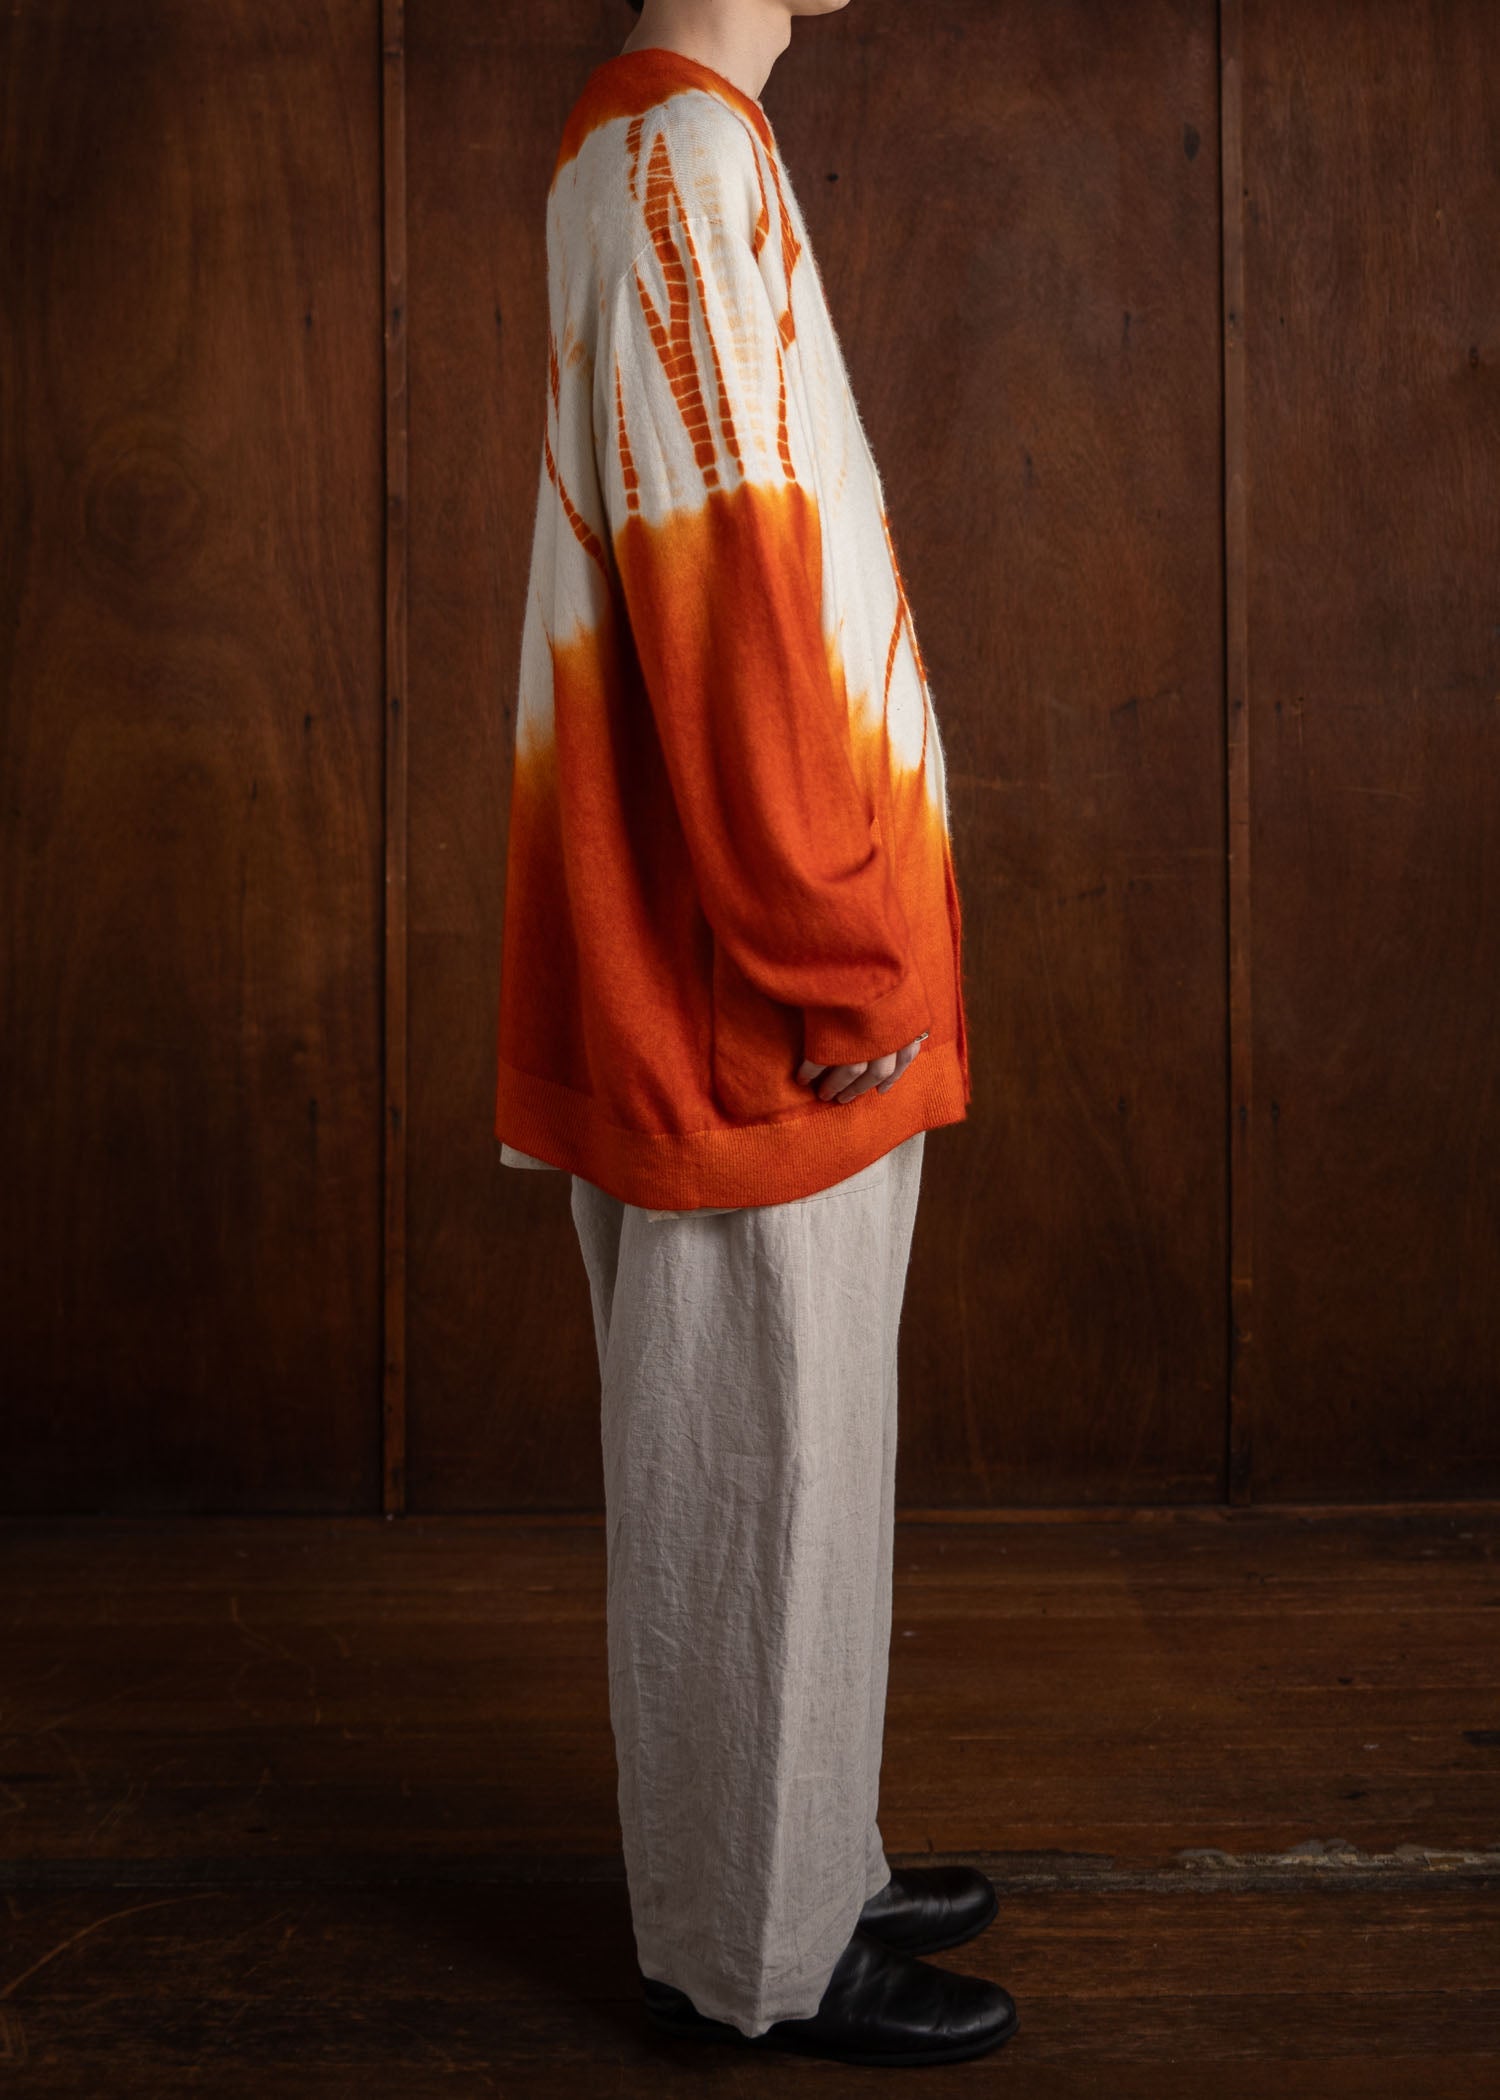 SUZUSAN Cashmere Seamless Wide Cardigan Tesuji Yoroidan Shibori Diagonal Burnt Orange x Natural White